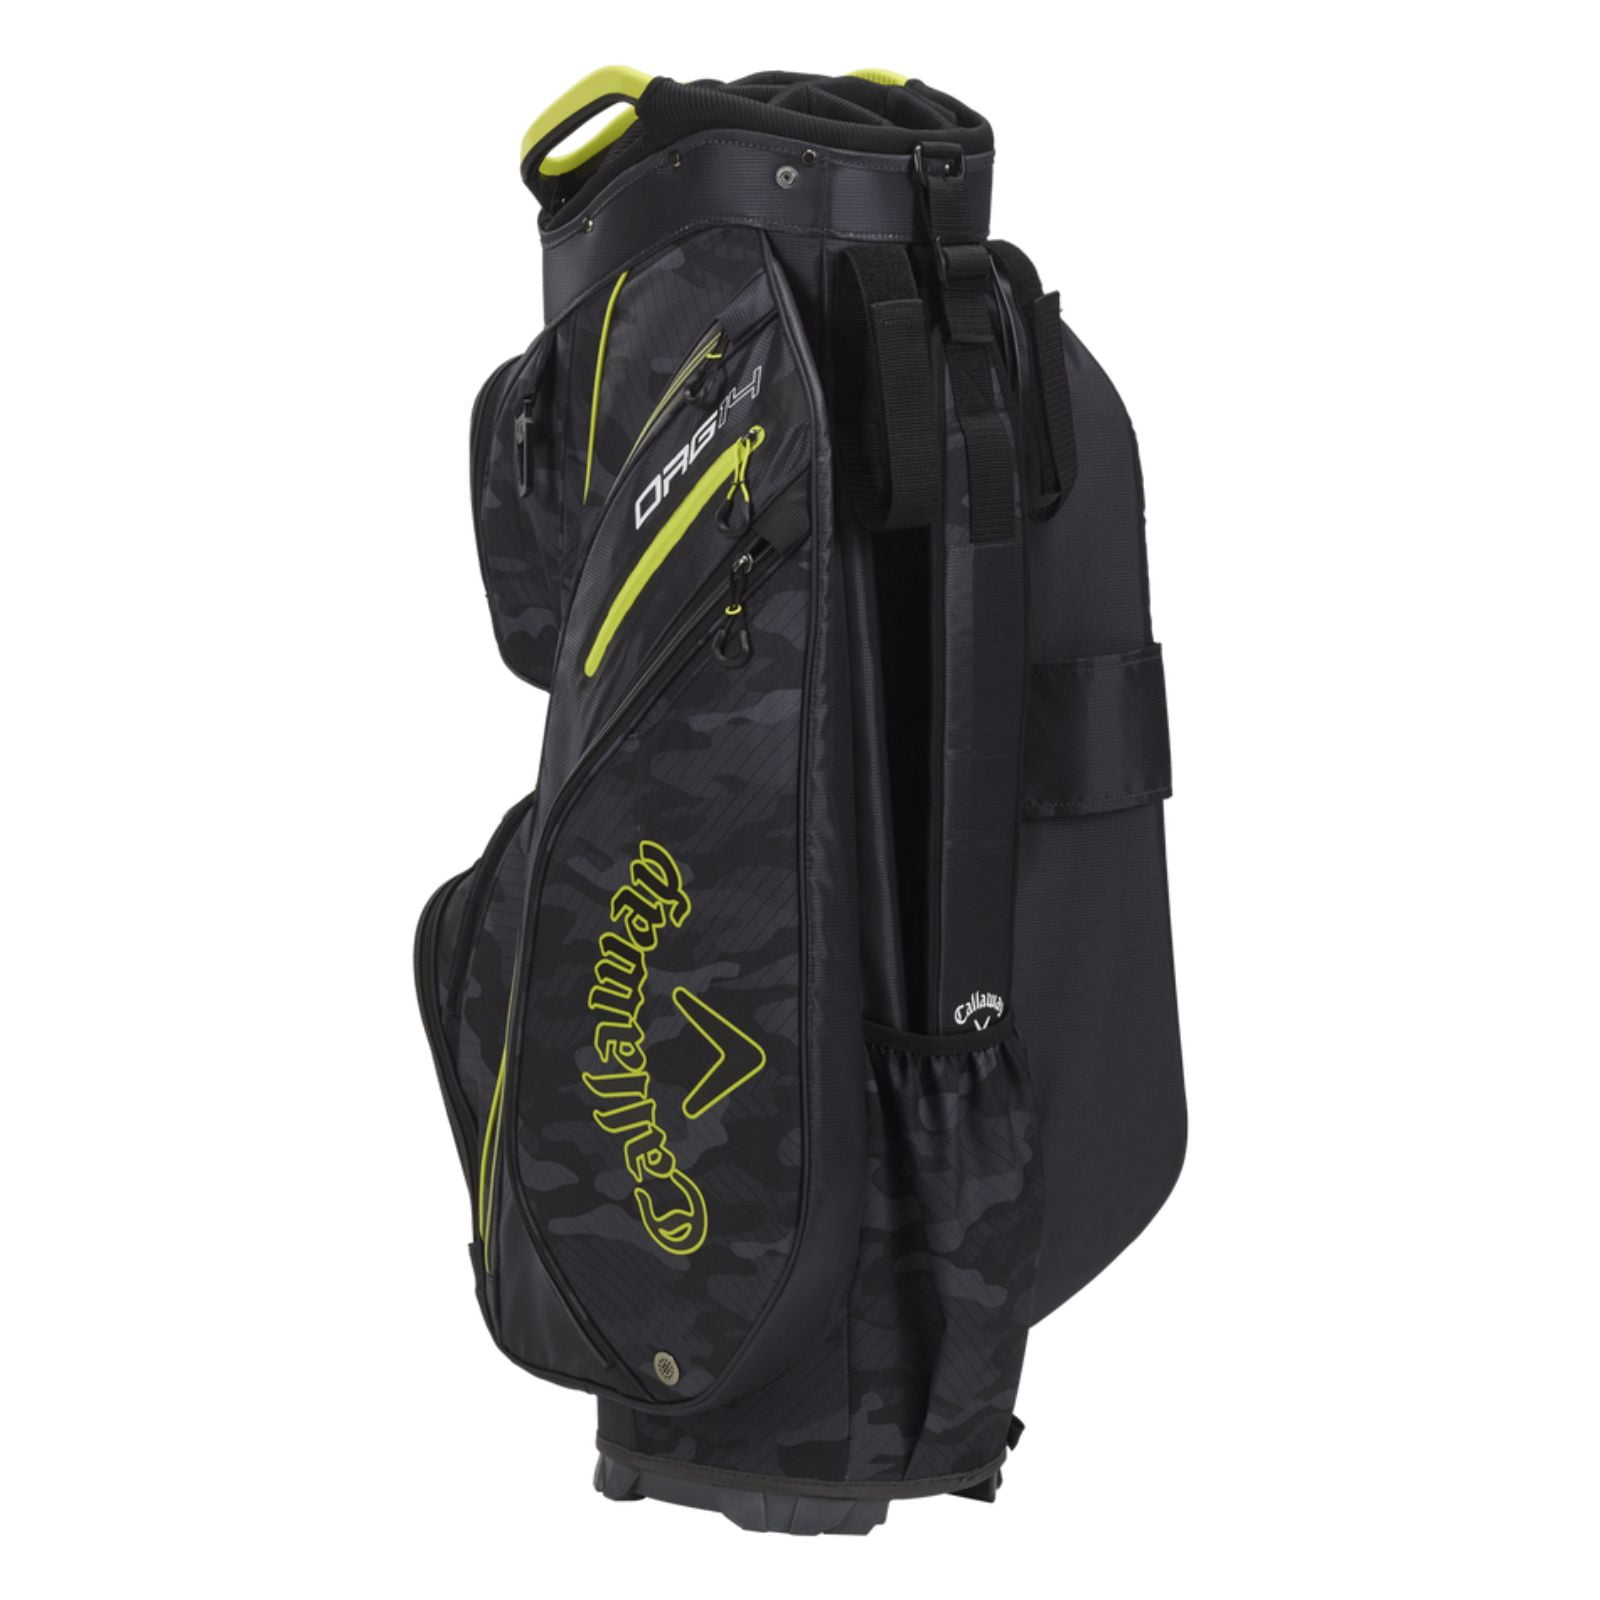 Callaway Golf ORG 14 Cart Bag Black Print Charcoal - Walmart.com